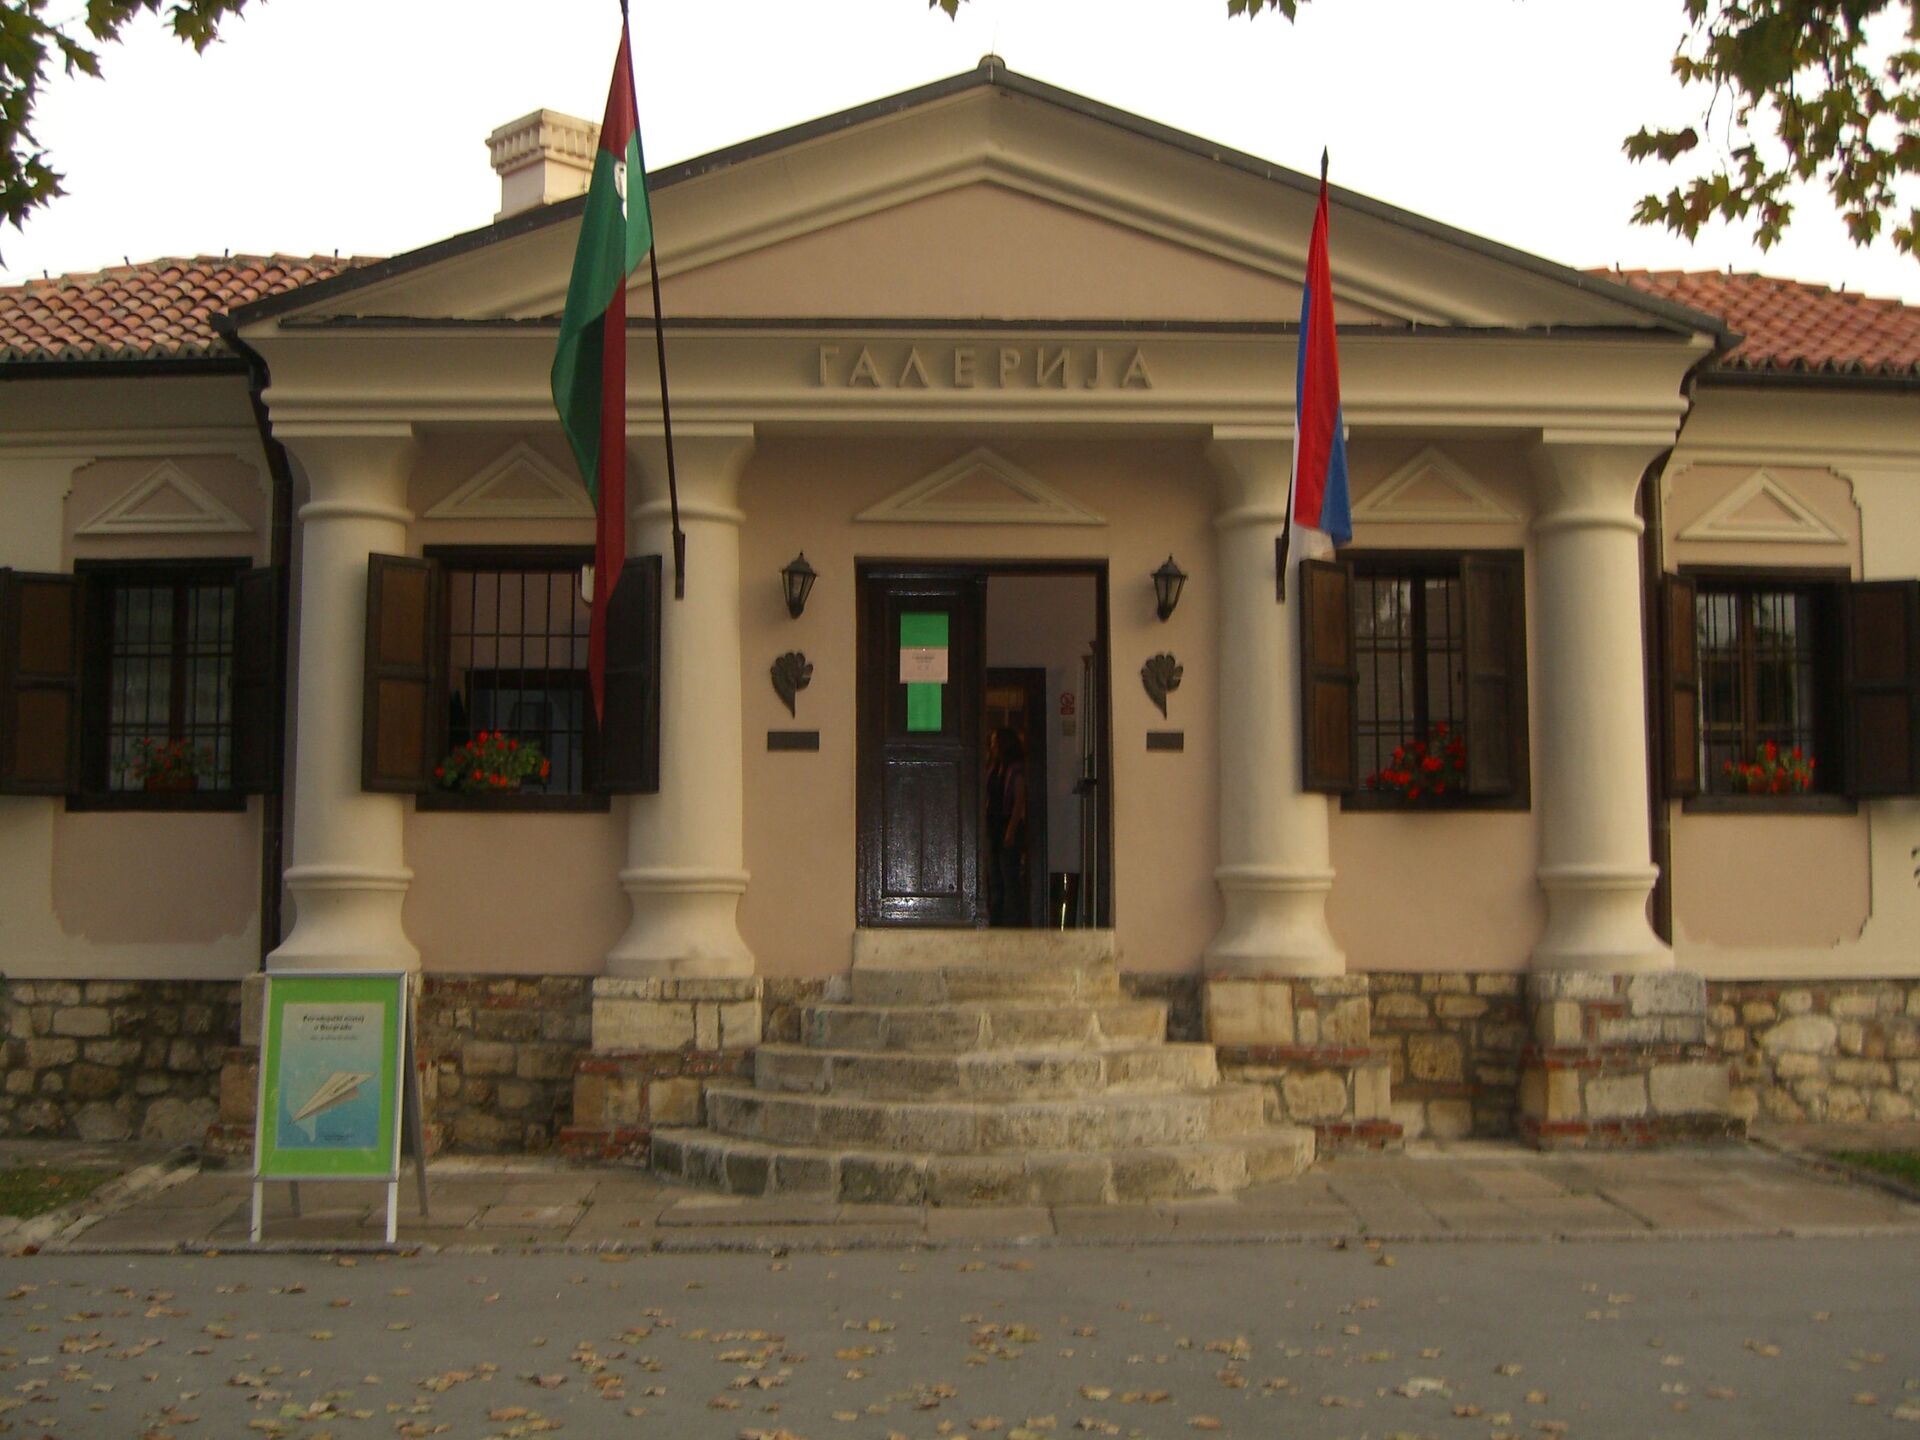 „Došlo je do nesporazuma“: Prirodnjački muzej u Beogradu neće biti ugašen - Sputnik Srbija, 1920, 24.02.2021